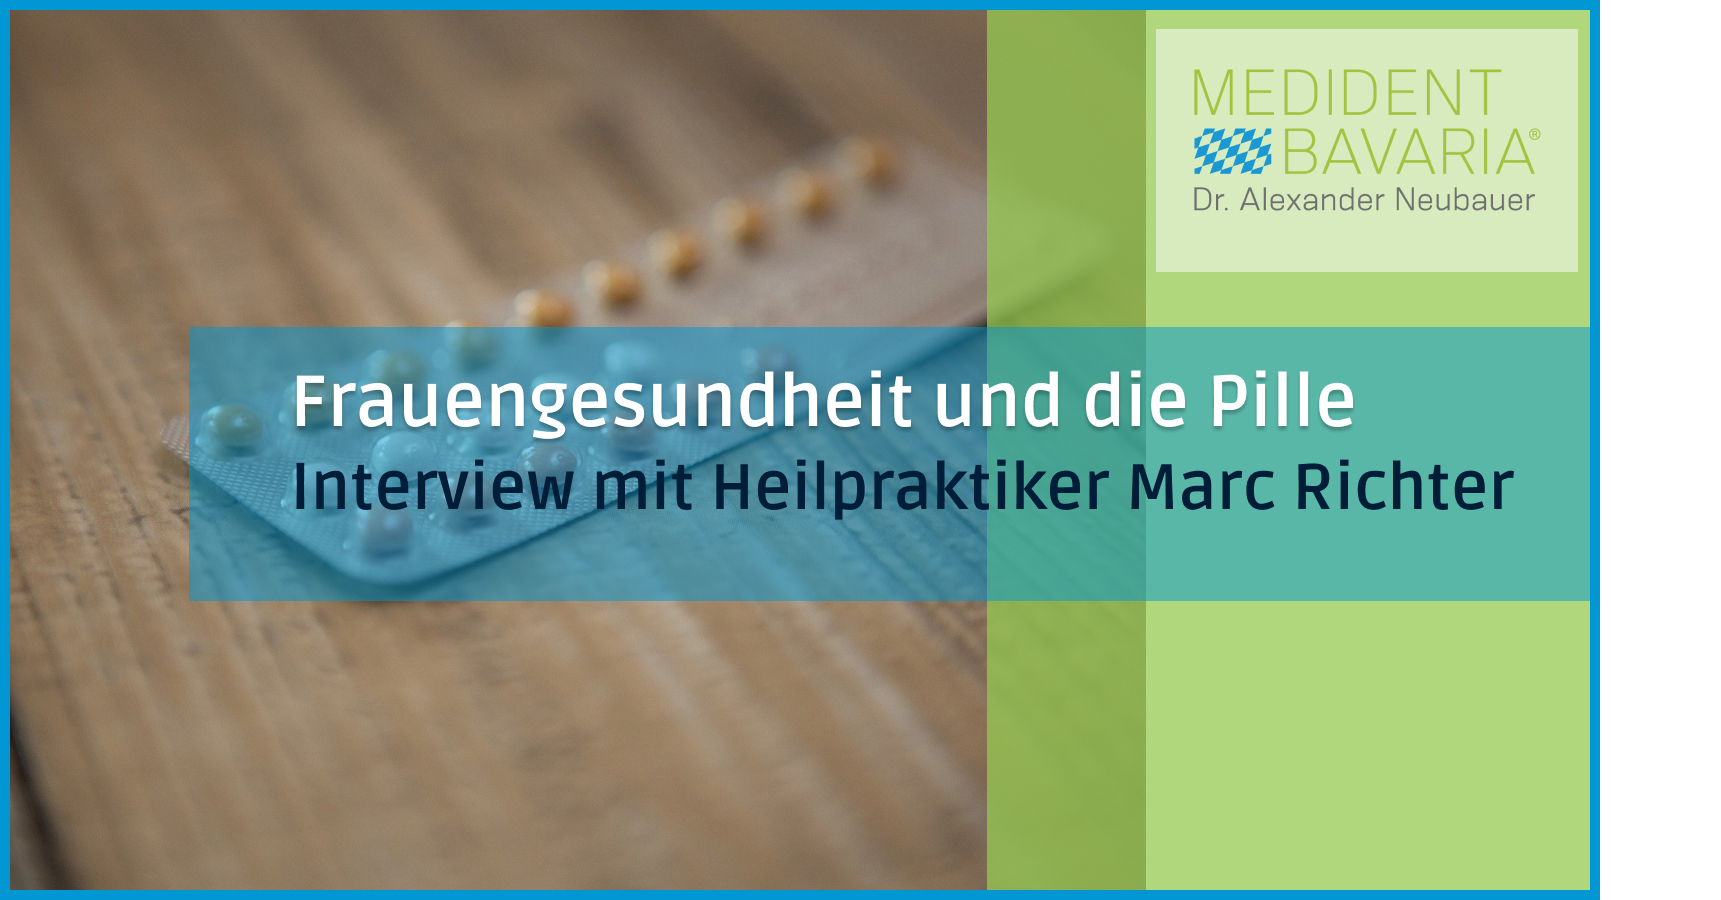 Frauengesundheit und die Pille- Interview mit Marc Richter Heilpraktiker